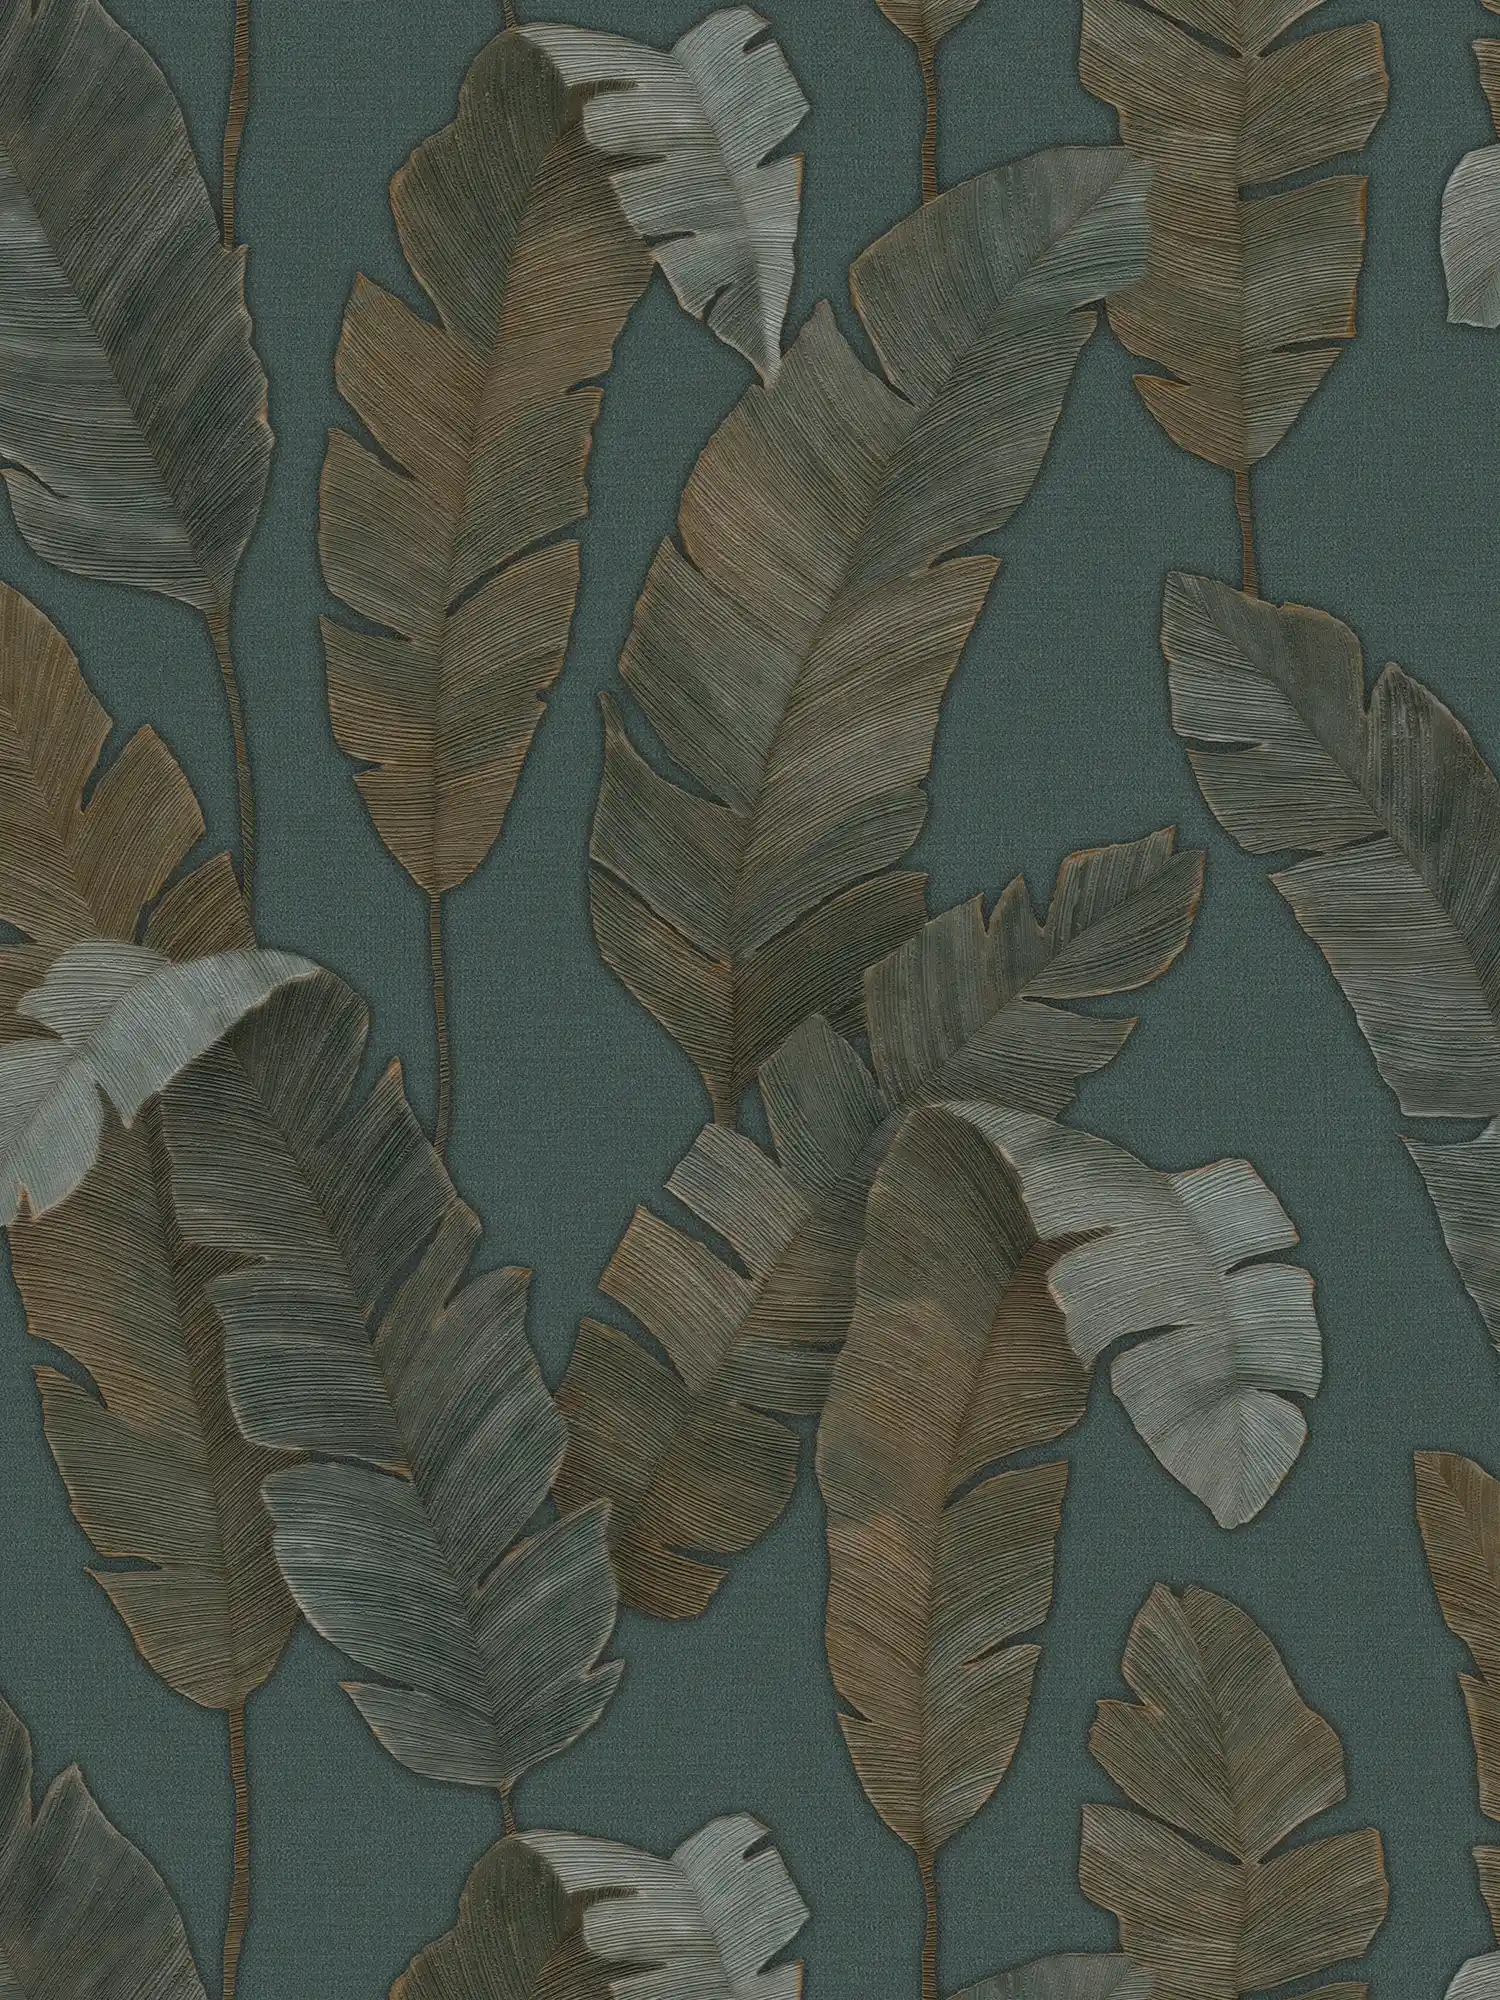 Papier peint intissé avec grandes feuilles de palmier dans une couleur foncée - pétrole, vert, marron
